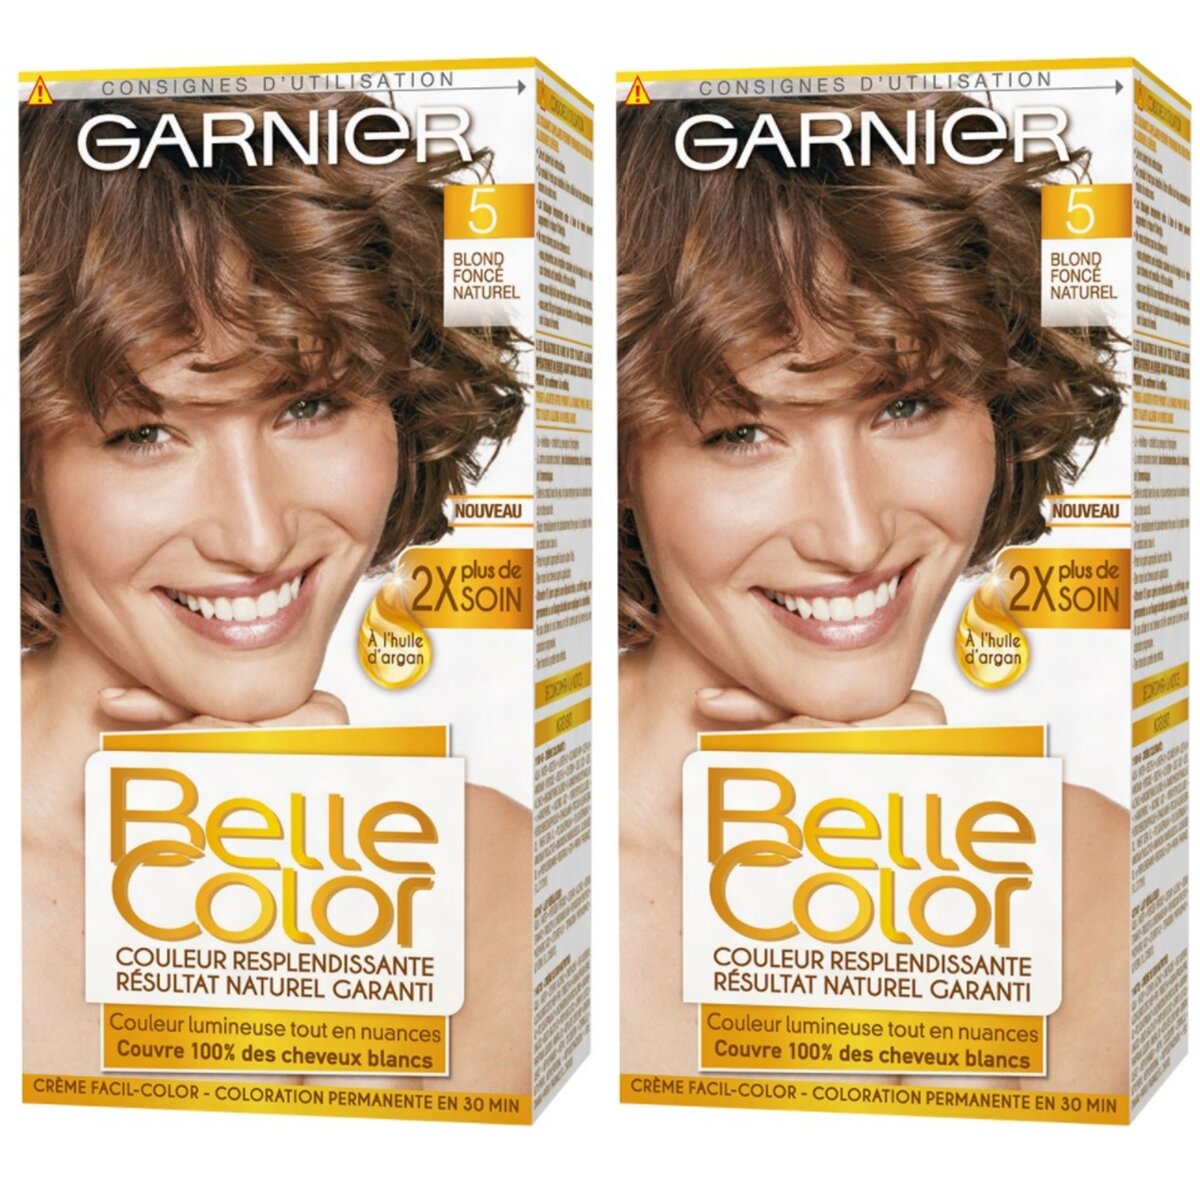 GARNIER Lot de 2 BELLE COLOR Coloration Permanente Résultat Naturel - Couleur Resplendissante 05 Blond Foncé